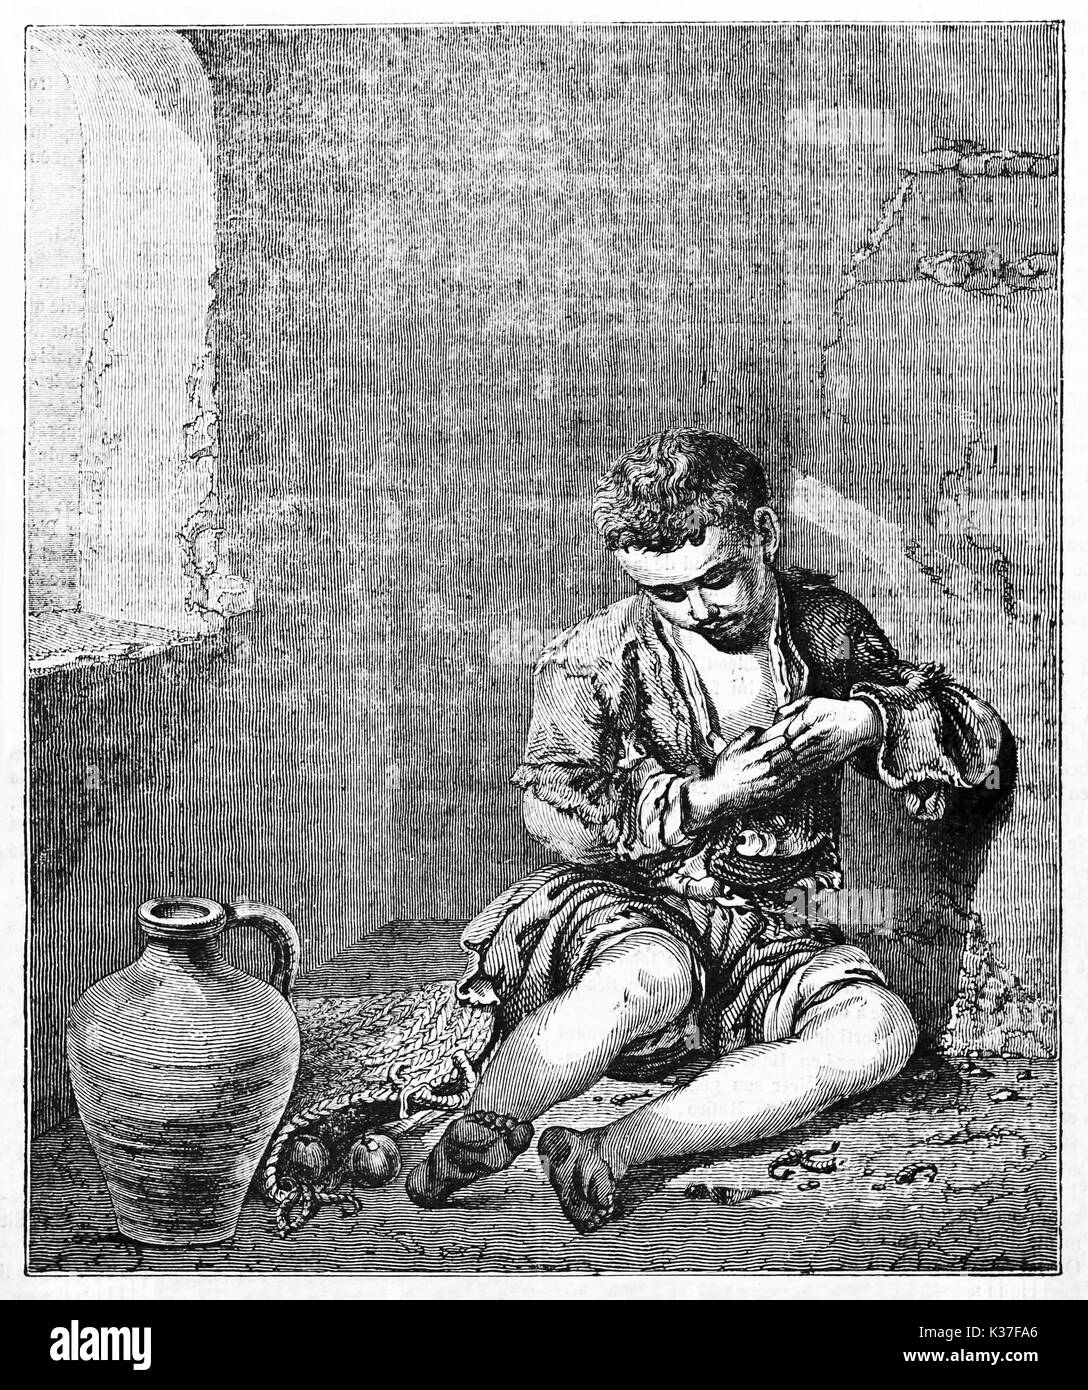 Alte graviert Reproduktion der junge Bettler, Gemälde im Louvre, Paris gehalten. Nach Murillo, auf Magasin Pittoresque, Paris, 1834 veröffentlicht. Stockfoto